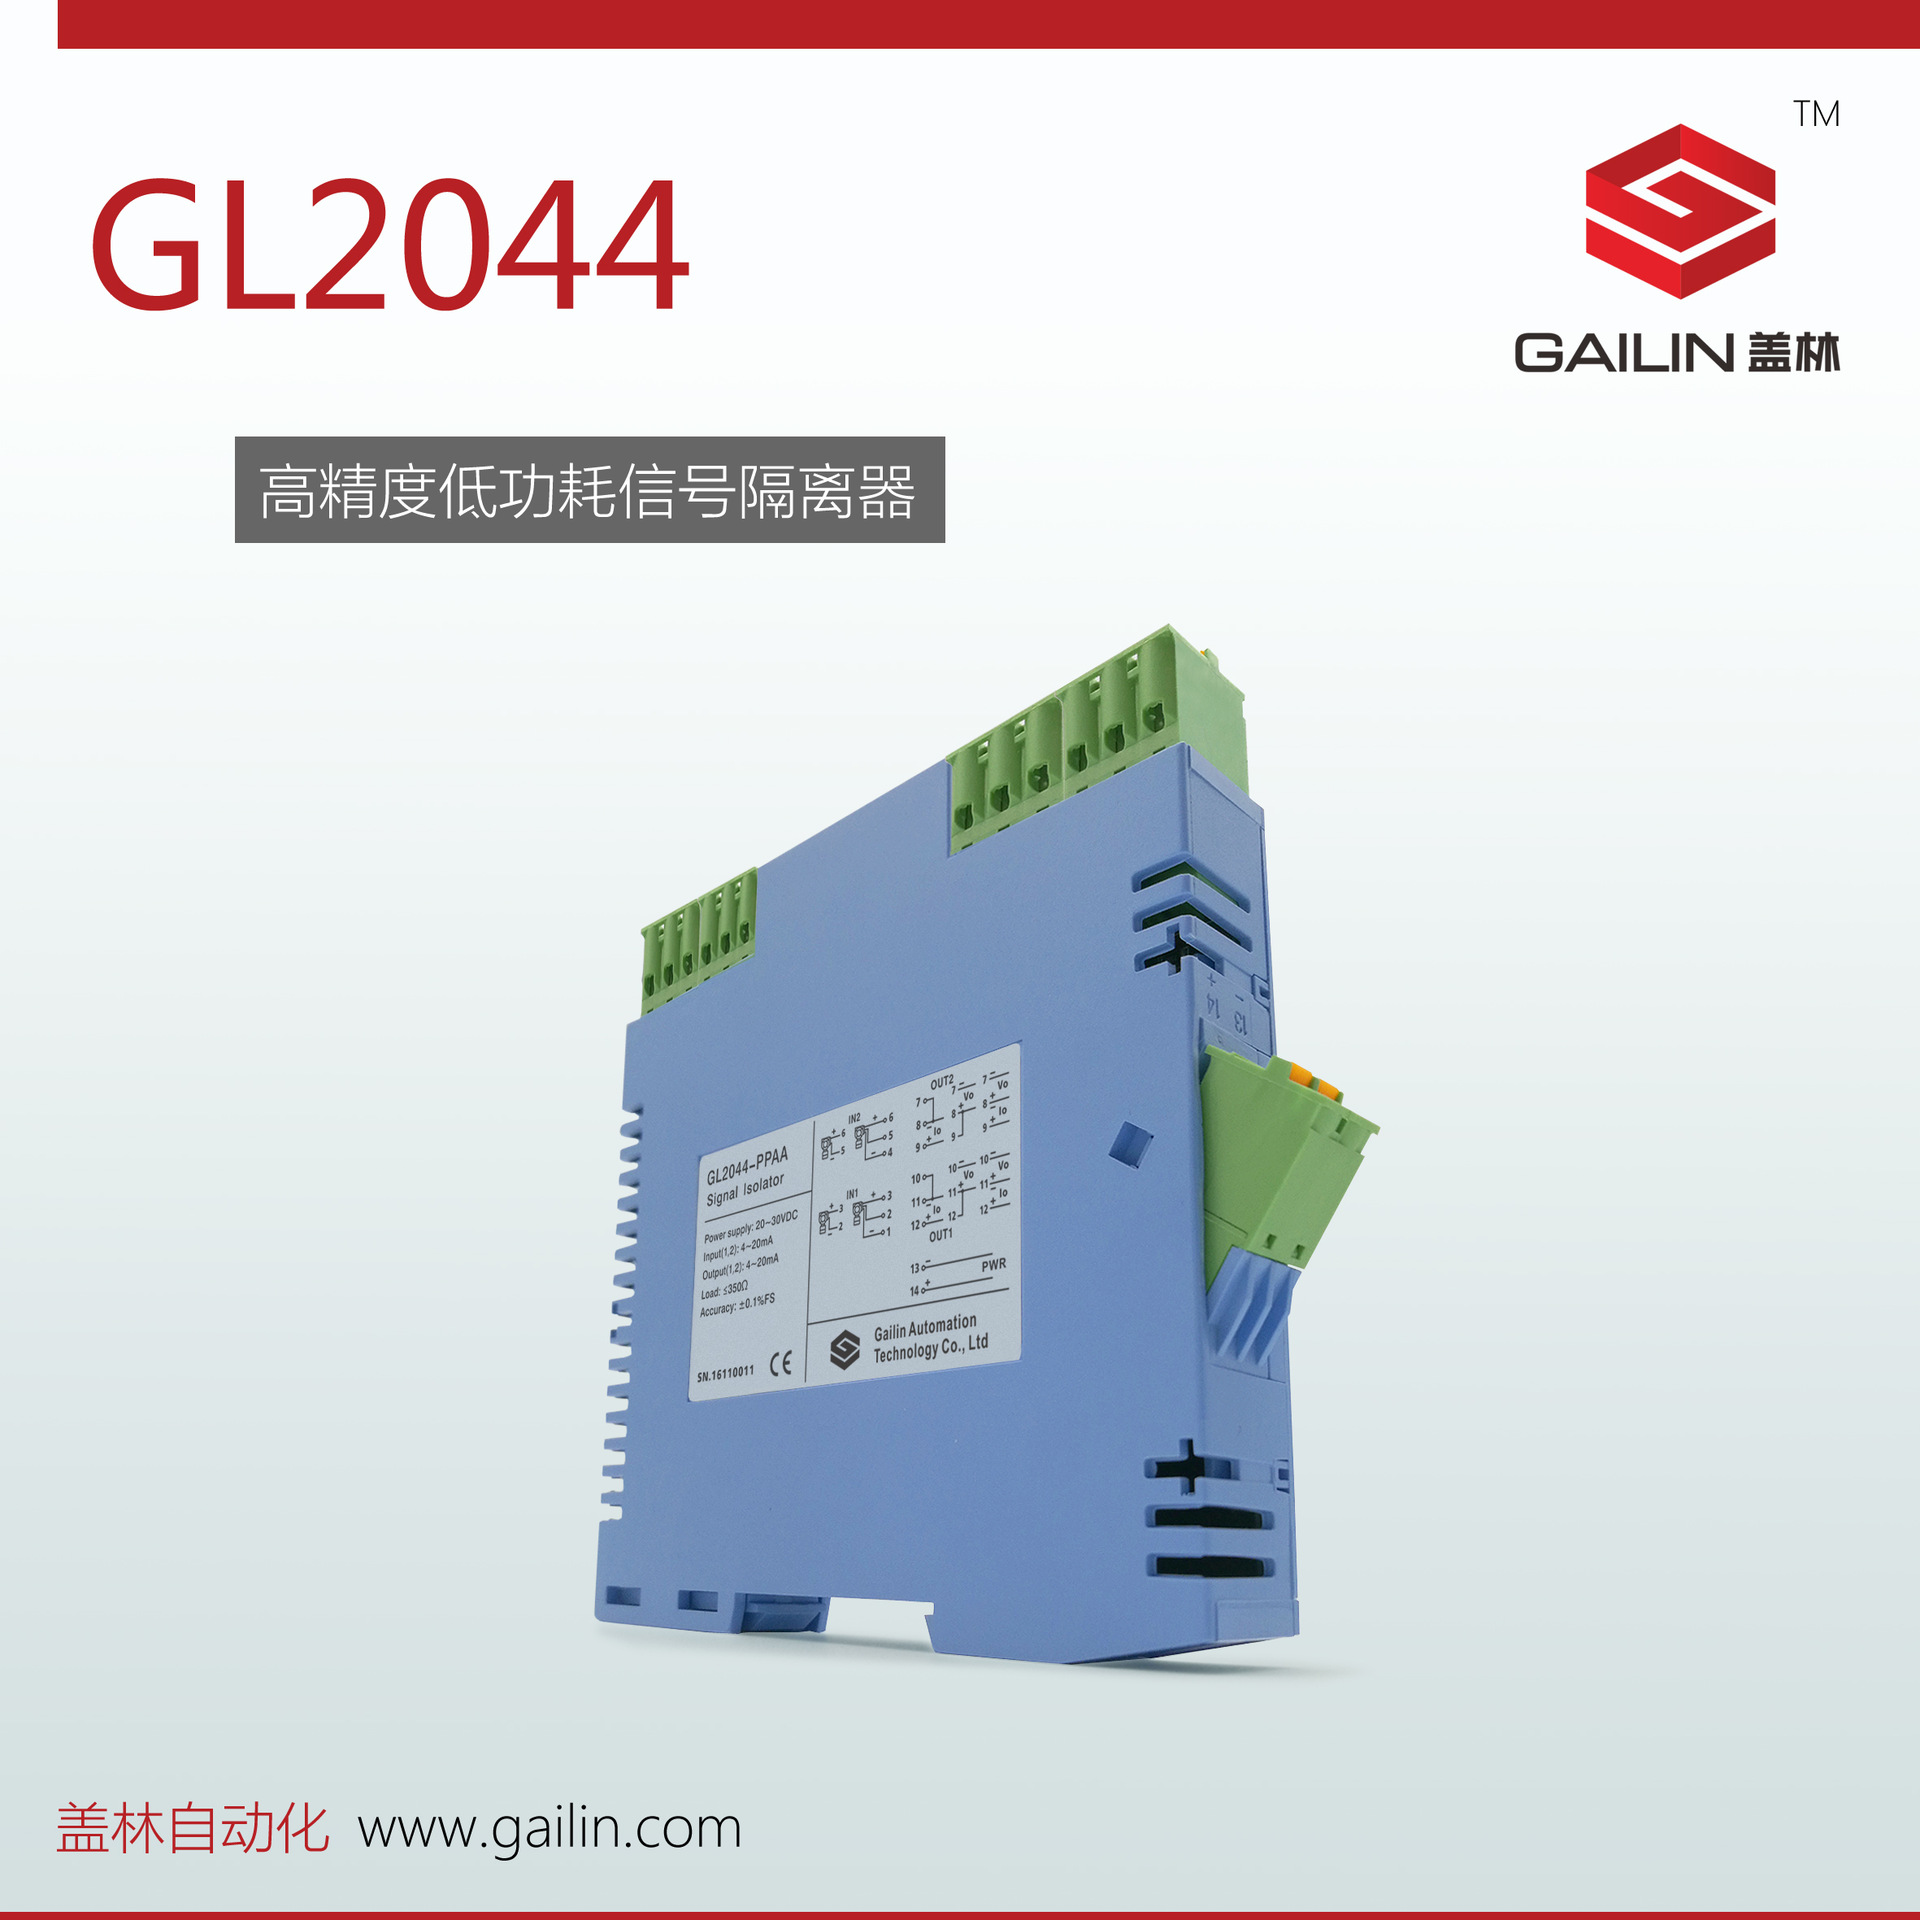 03 盖林－－GL2044 隔离配电器－－产品图2（1612